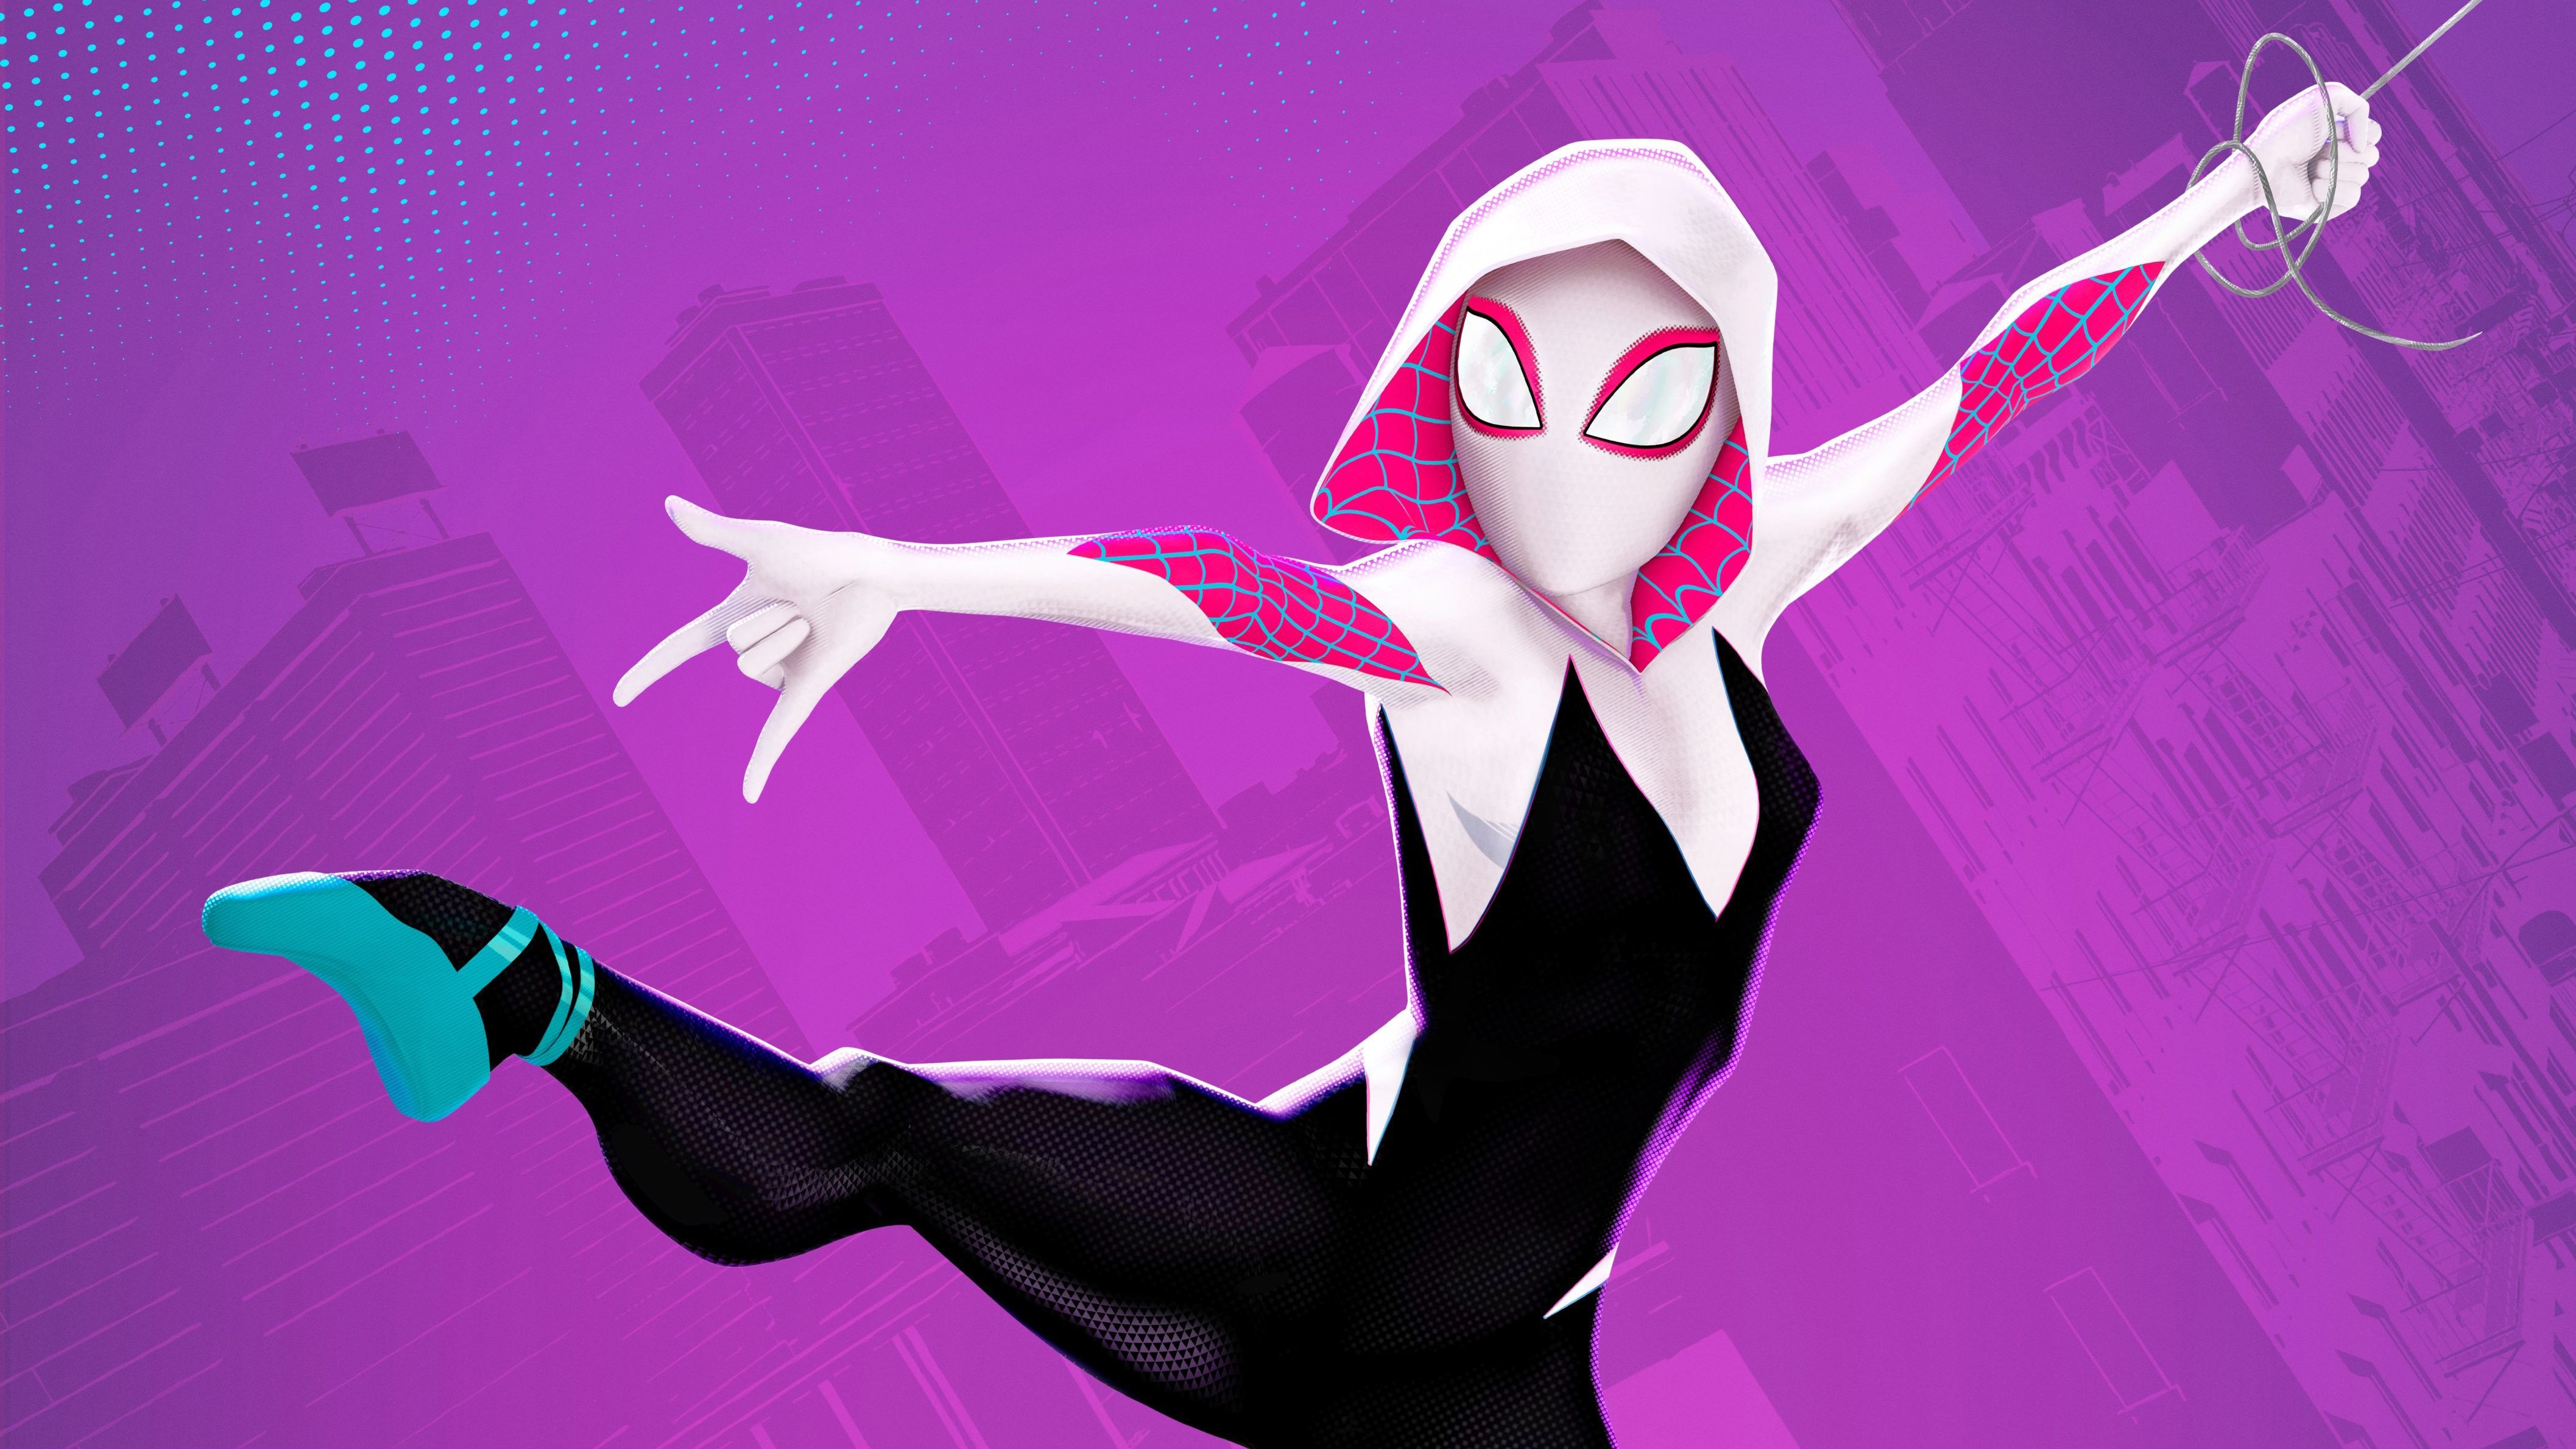 Wallpaper Spider Gwen Stacy in Spider-Man: Into the Spider-Verse.